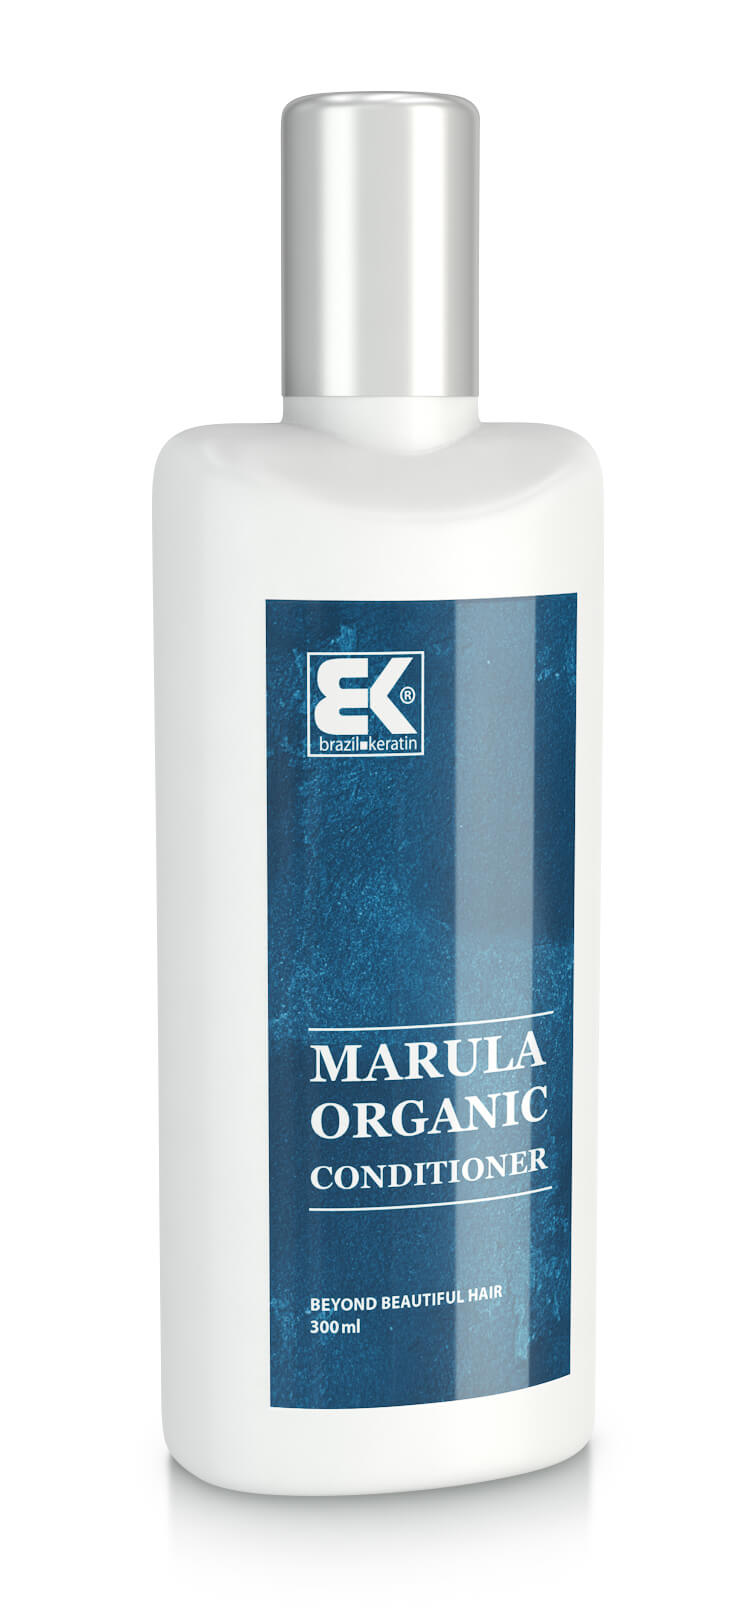 Brazil Keratin BIO keratínový kondicionér s marulovým olejom pre všetky typy vlasov (Marula Organic Conditioner) 300 ml + 2 mesiace na vrátenie tovaru